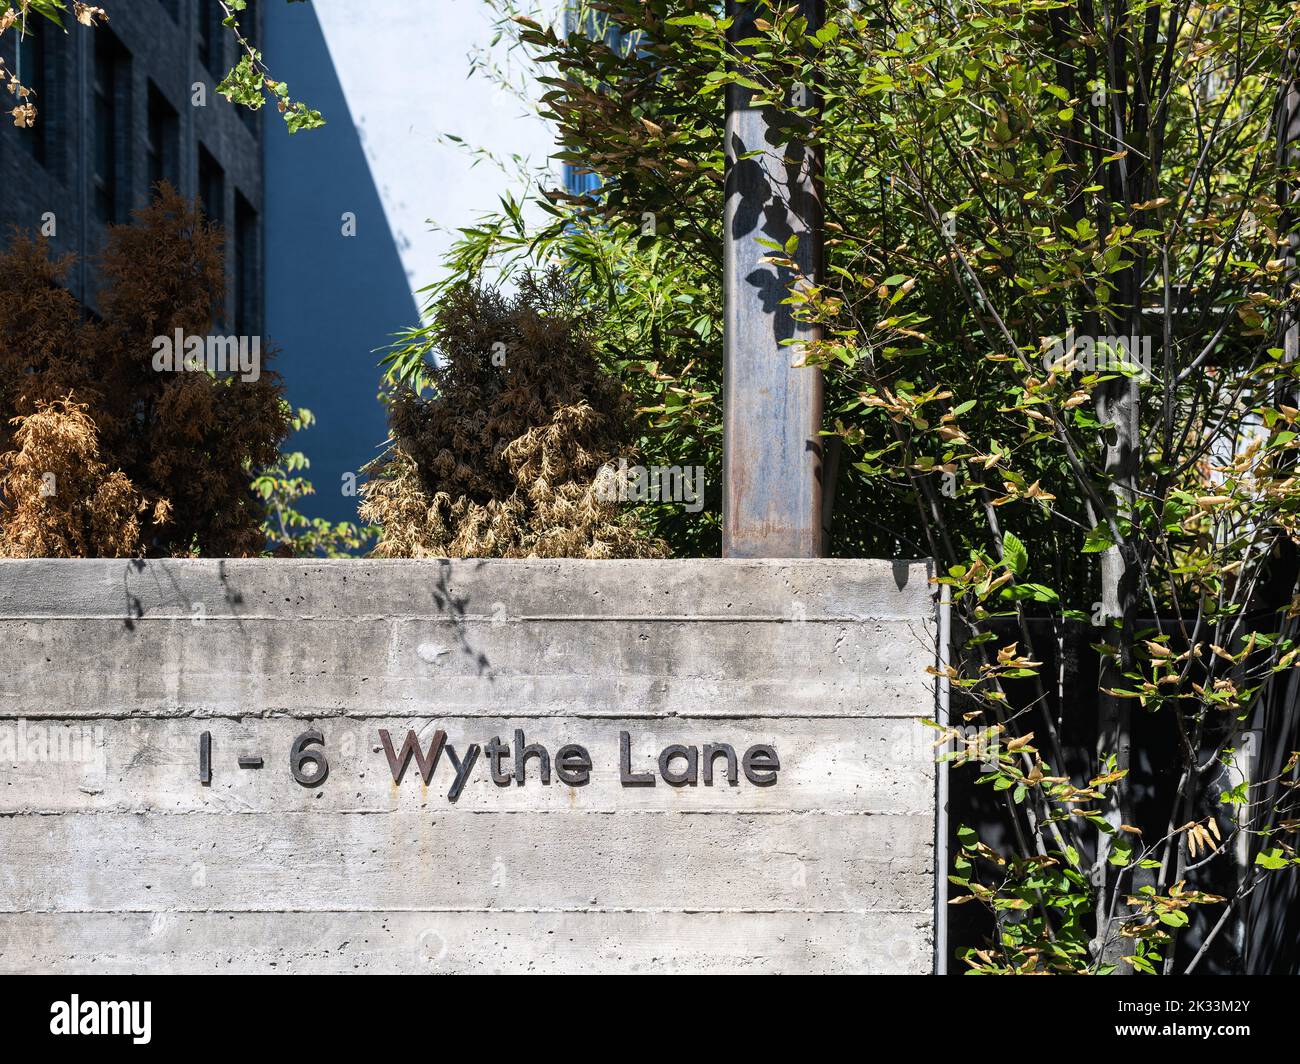 1-6 Wythe Lane Stock Photo